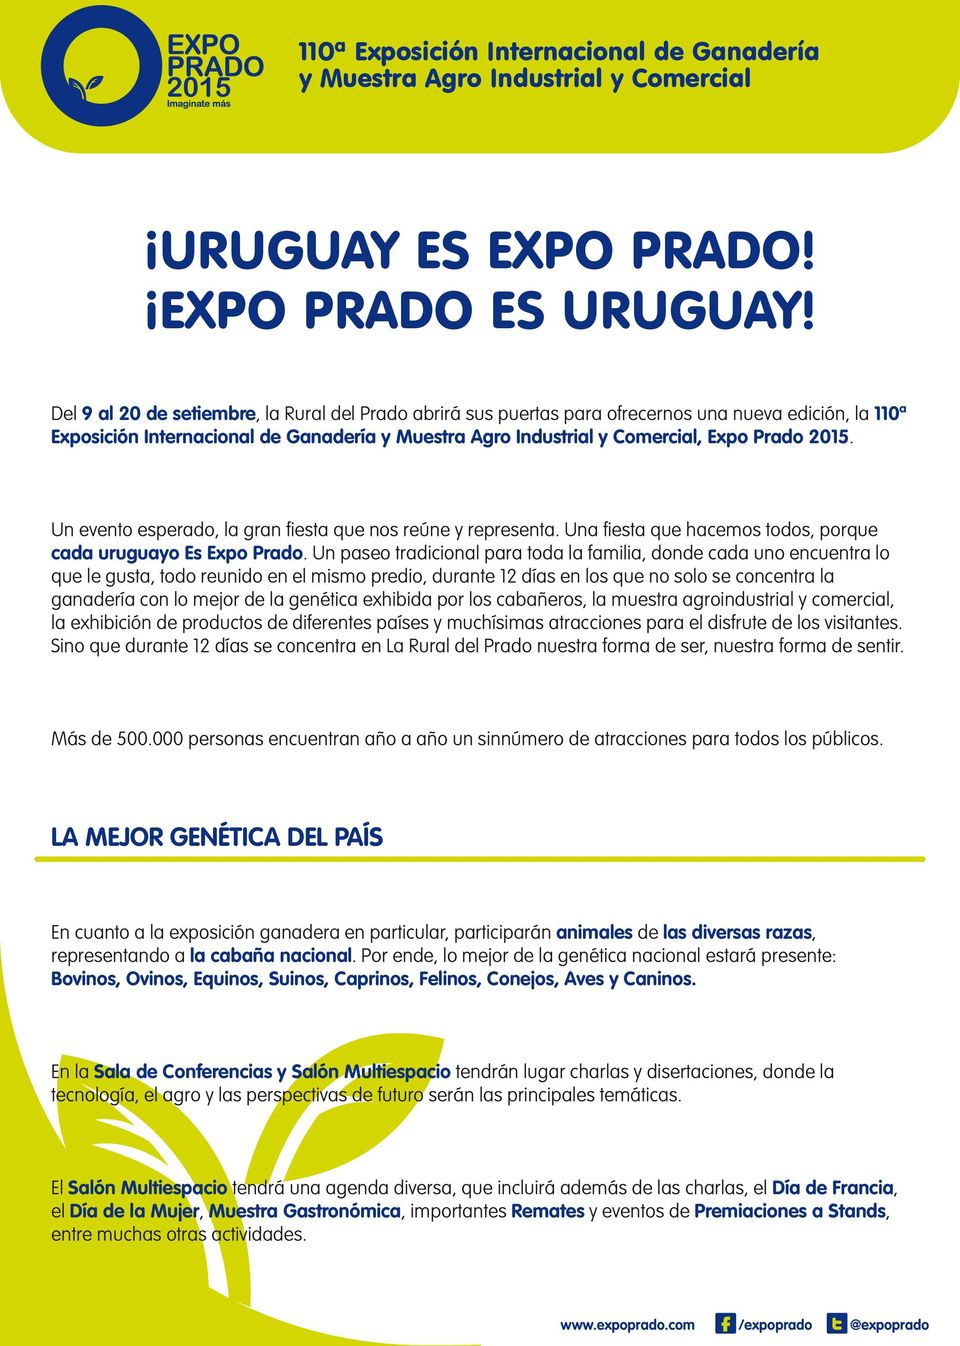 Un evento esperado, la gran fiesta que nos reúne y representa. Una fiesta que hacemos todos, porque cada uruguayo Es Expo Prado.